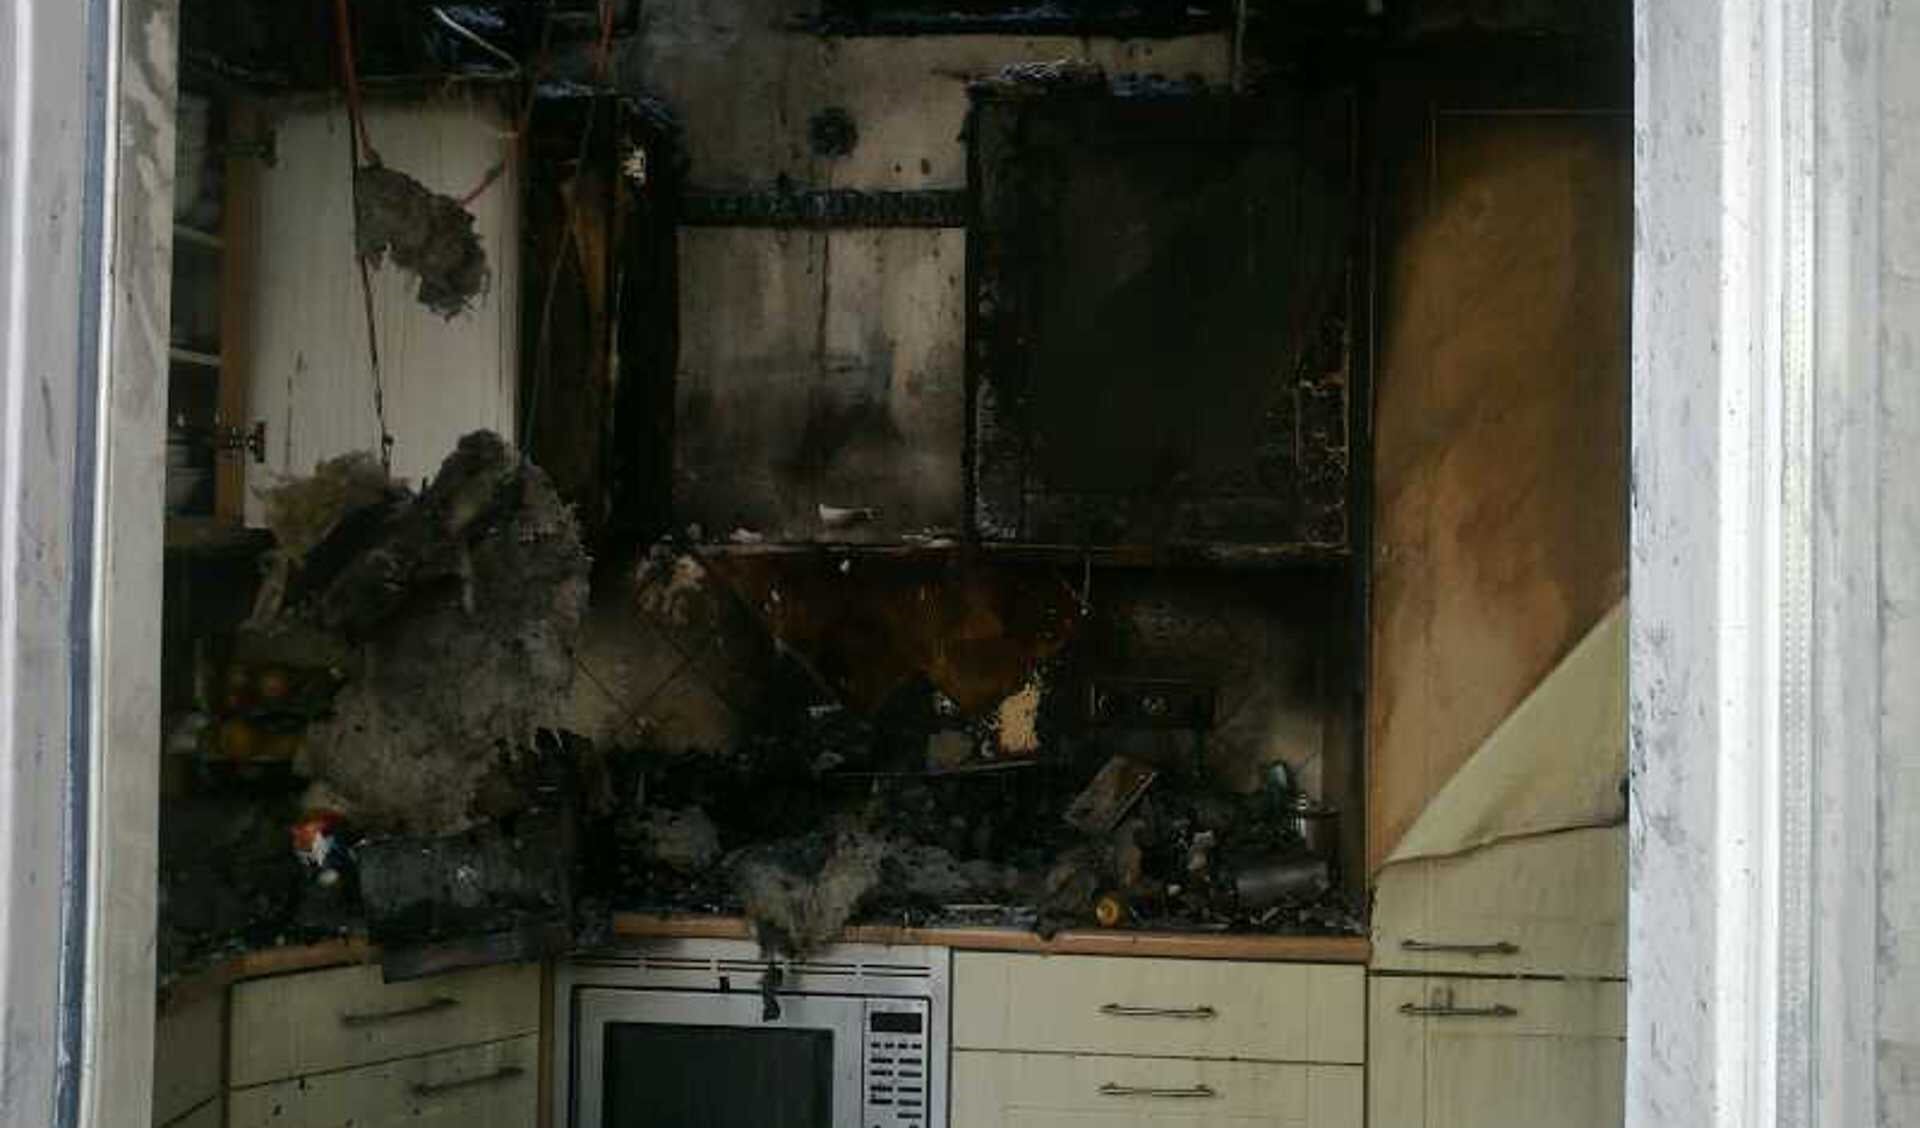 De keuken is bijna helemaal uitgebrand.